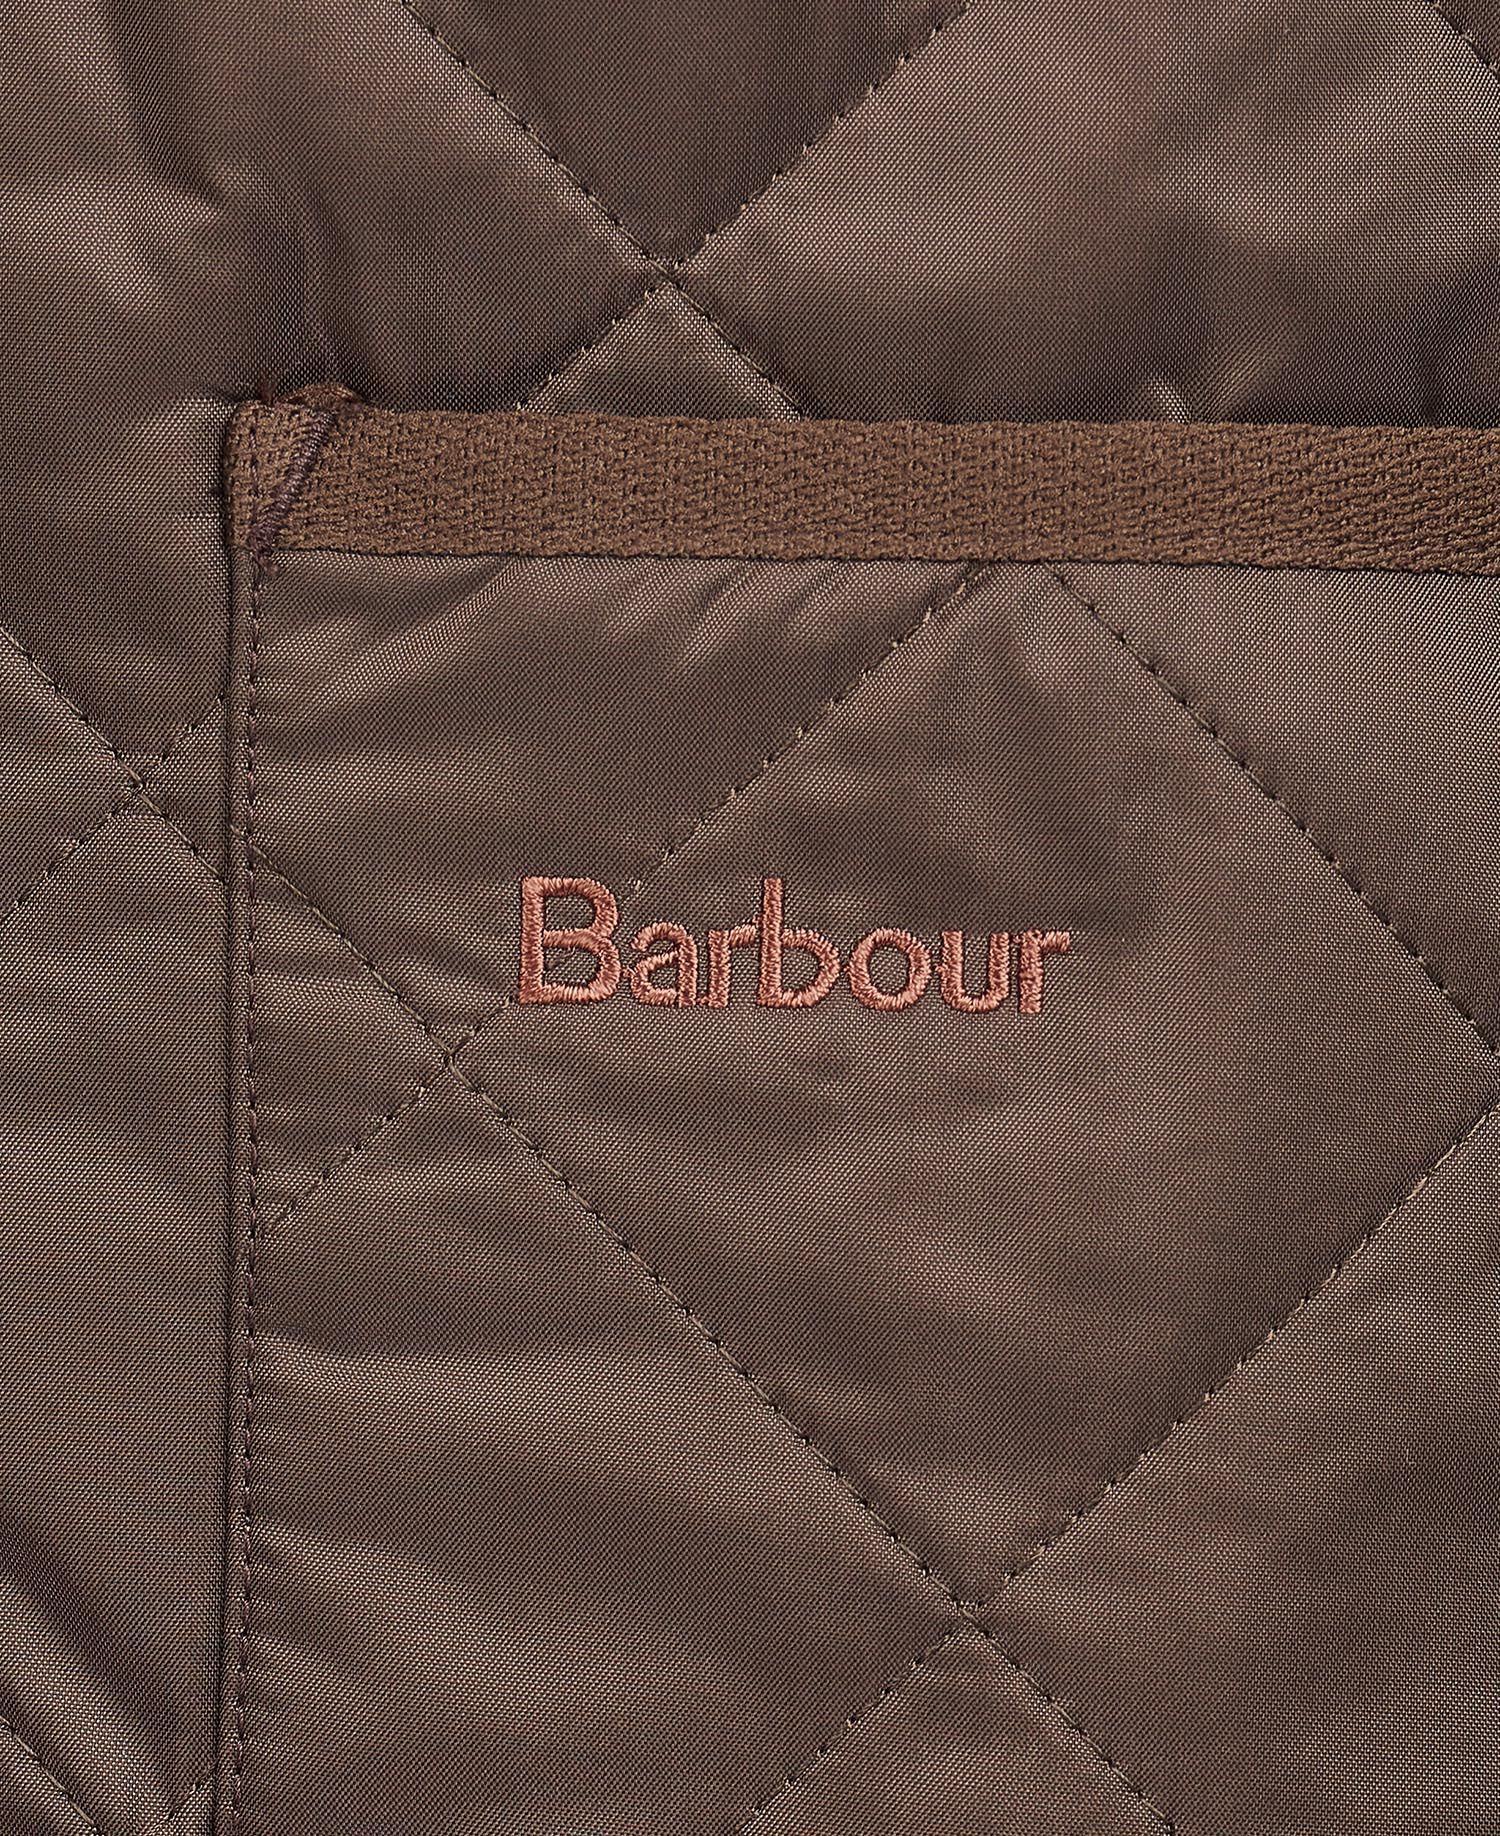 Barbour Quilted Waistcoat/Zip-In Liner in Brown | Barbour